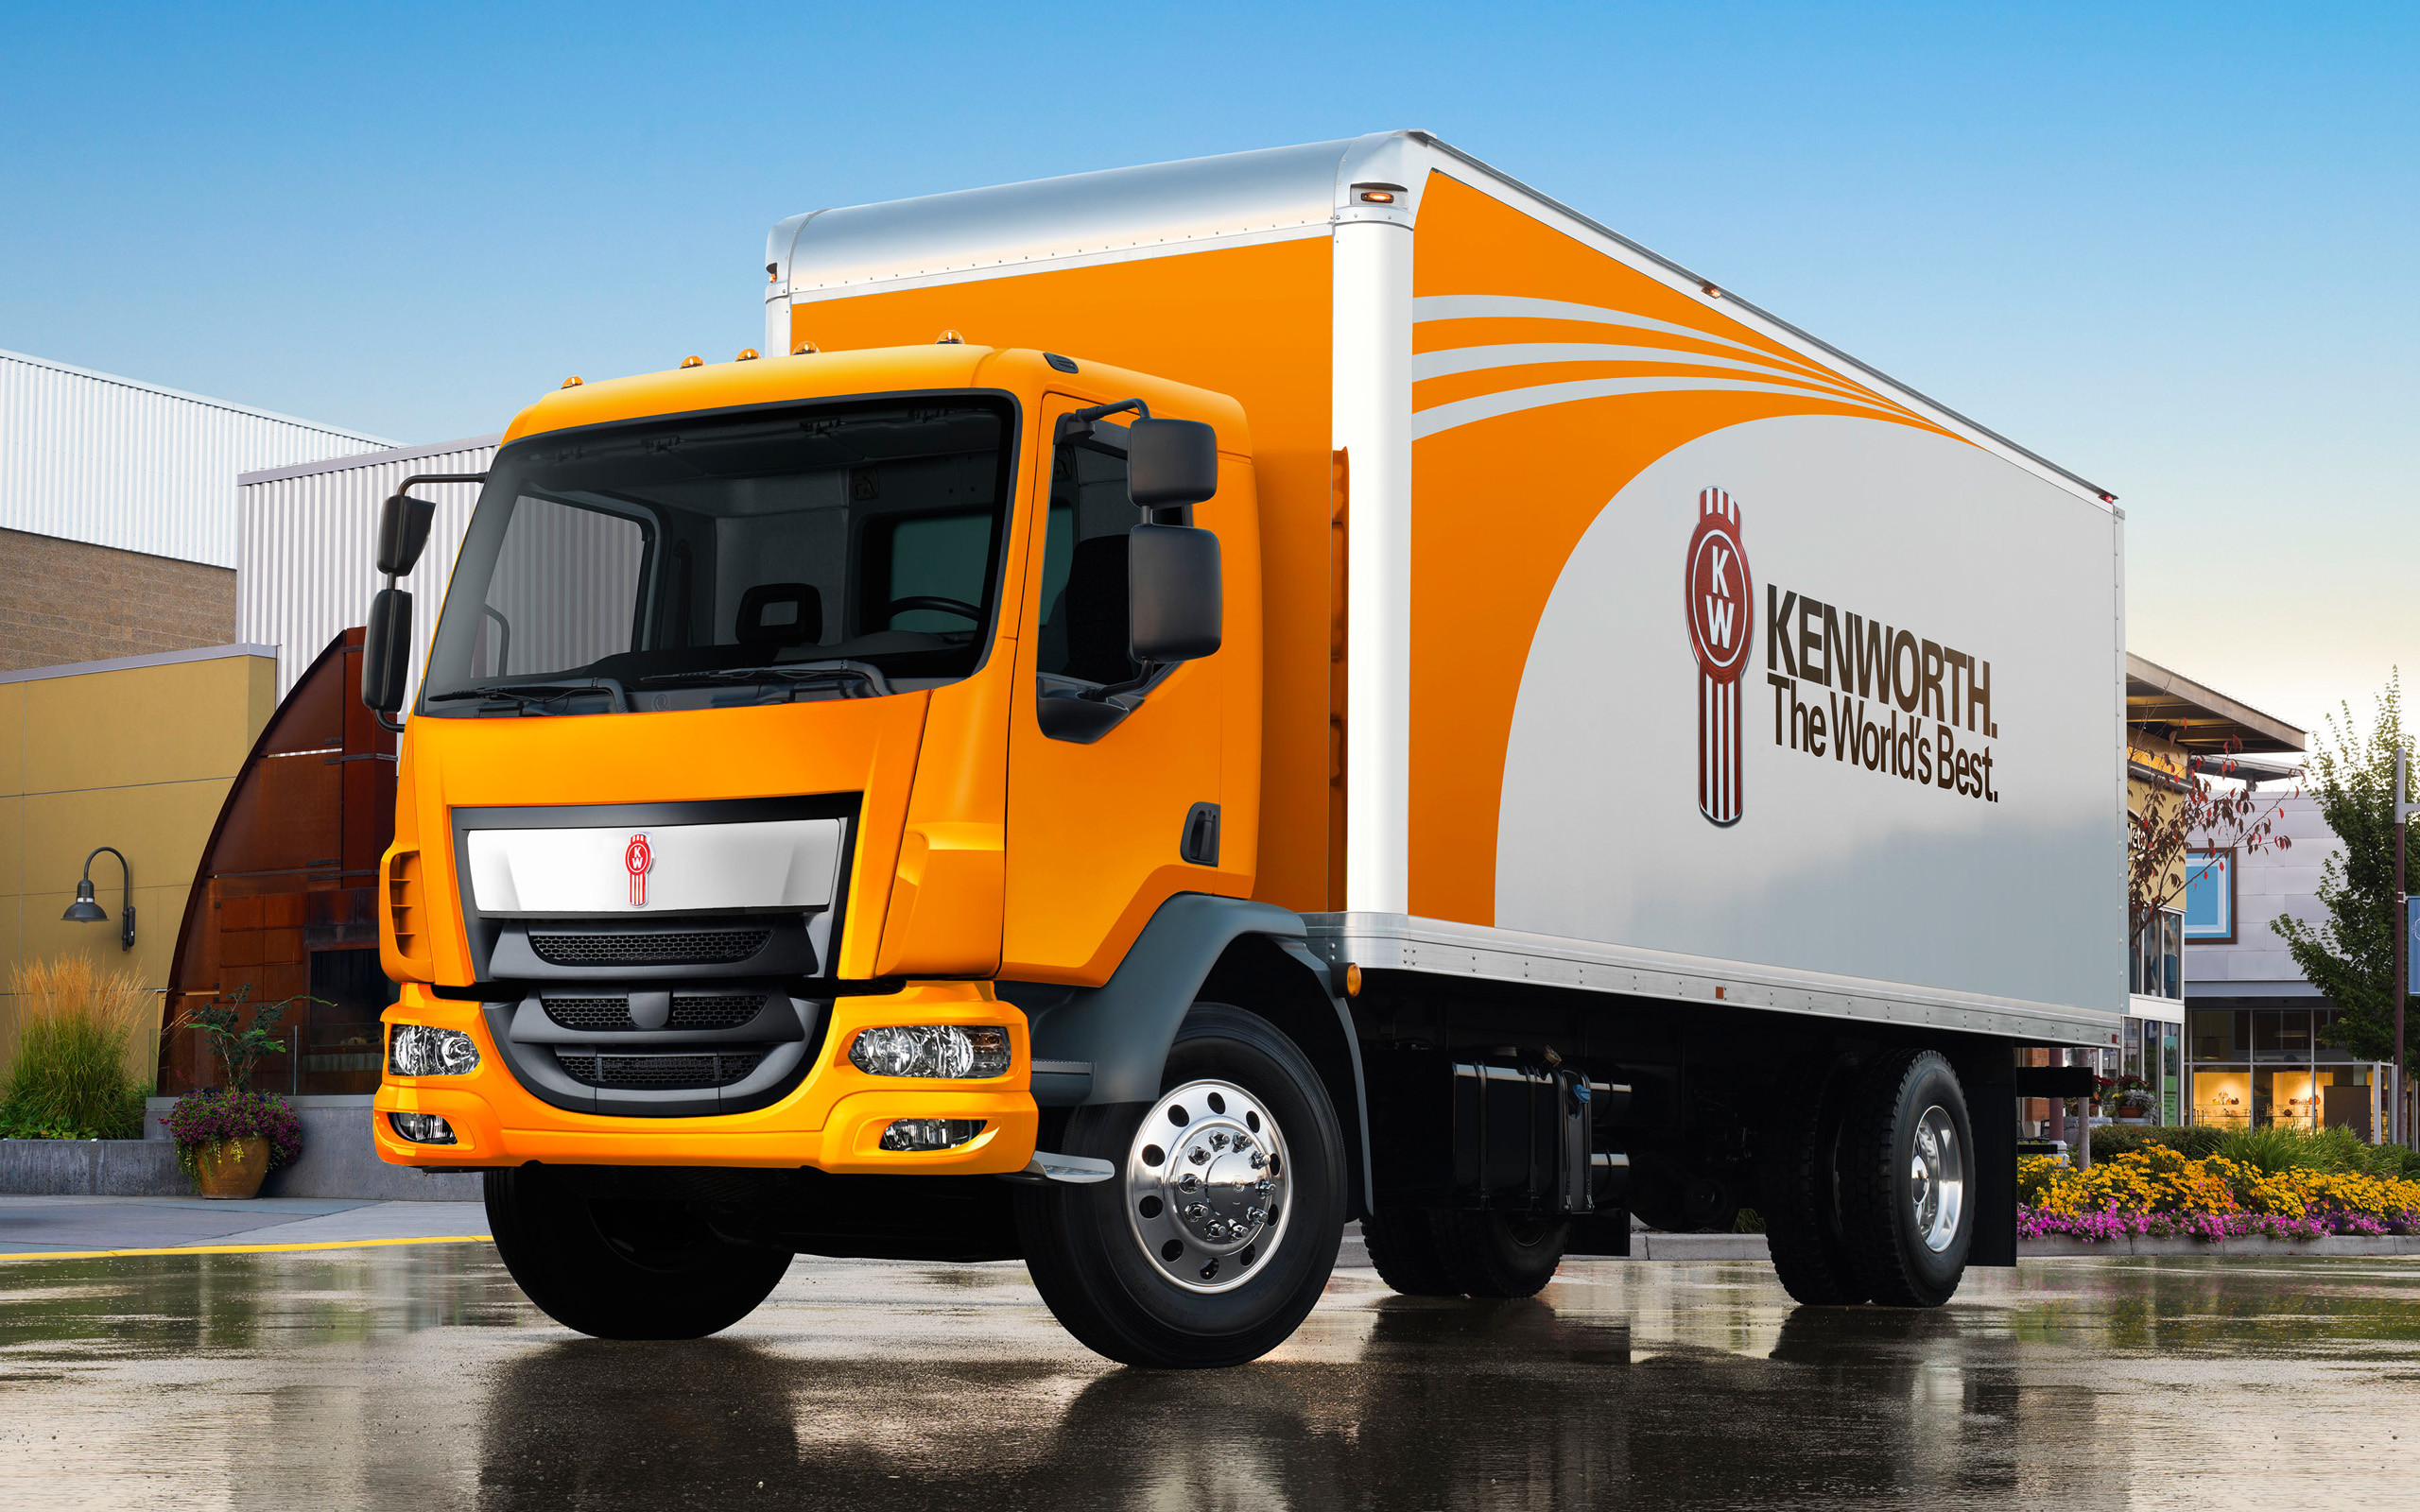 2560x1600 Kenworth K-370, Small trucks, new trucks, orange K-370,